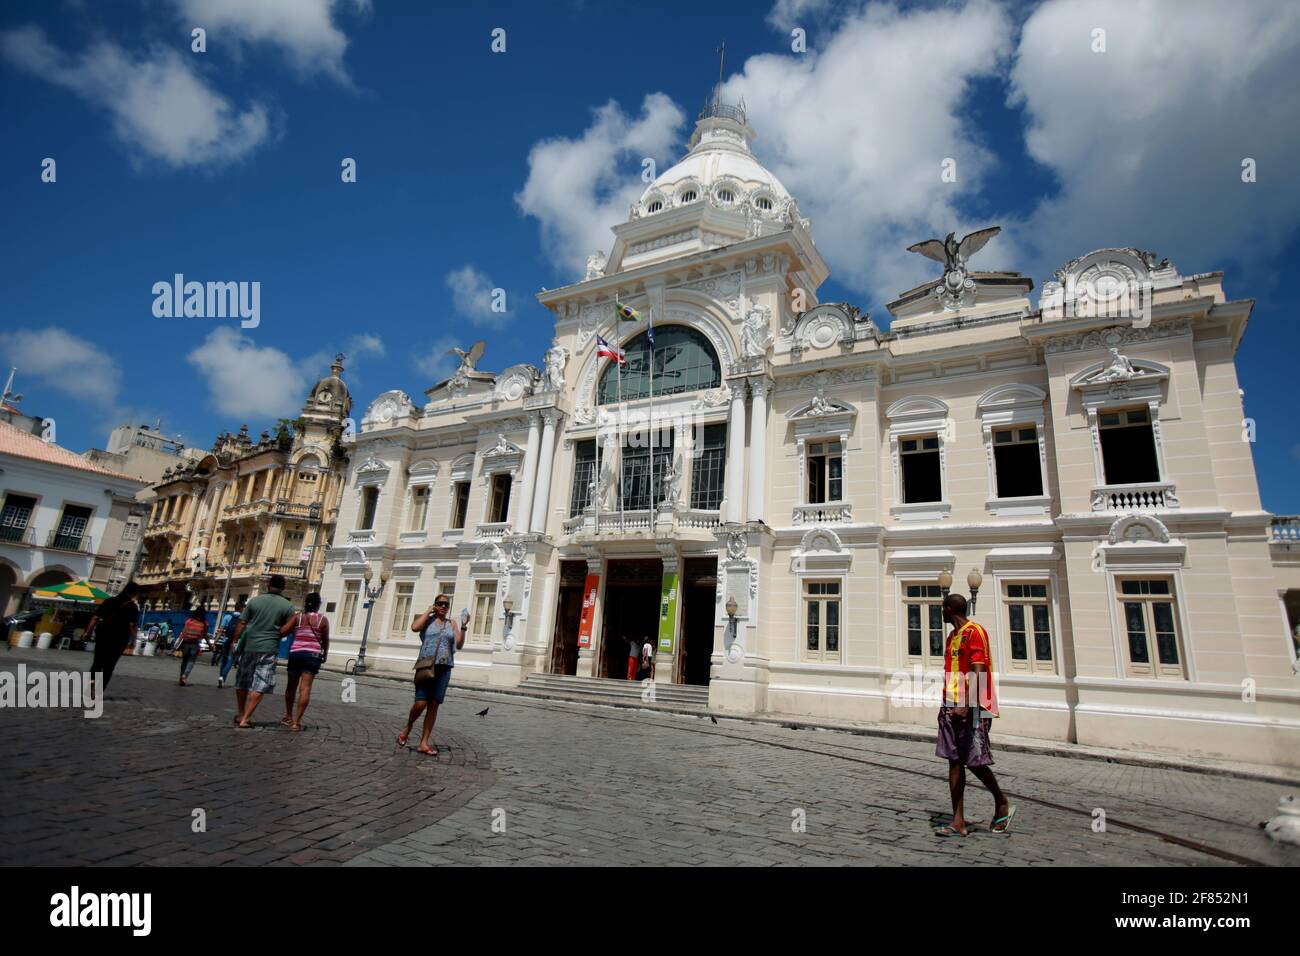 salvador, bahia / brasilien - 23. Mai 2015: Blick auf den Rio Branco Palast im historischen Zentrum der Stadt Salvador. *** Ortsüberschrift *** Stockfoto